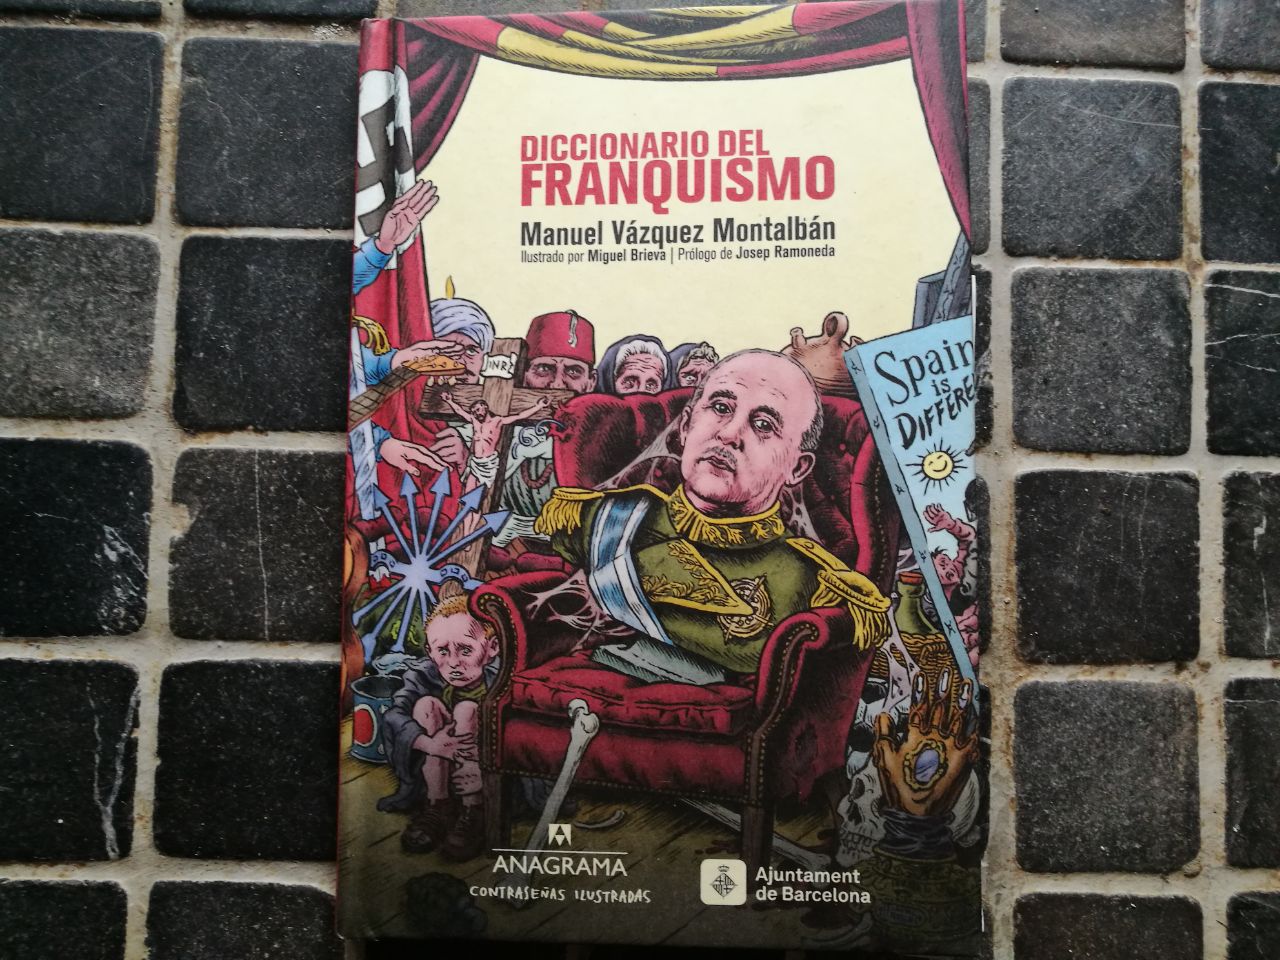 Io, Franco - Manuel Vázquez Montalbán - Libro - Sellerio Editore Palermo -  La memoria